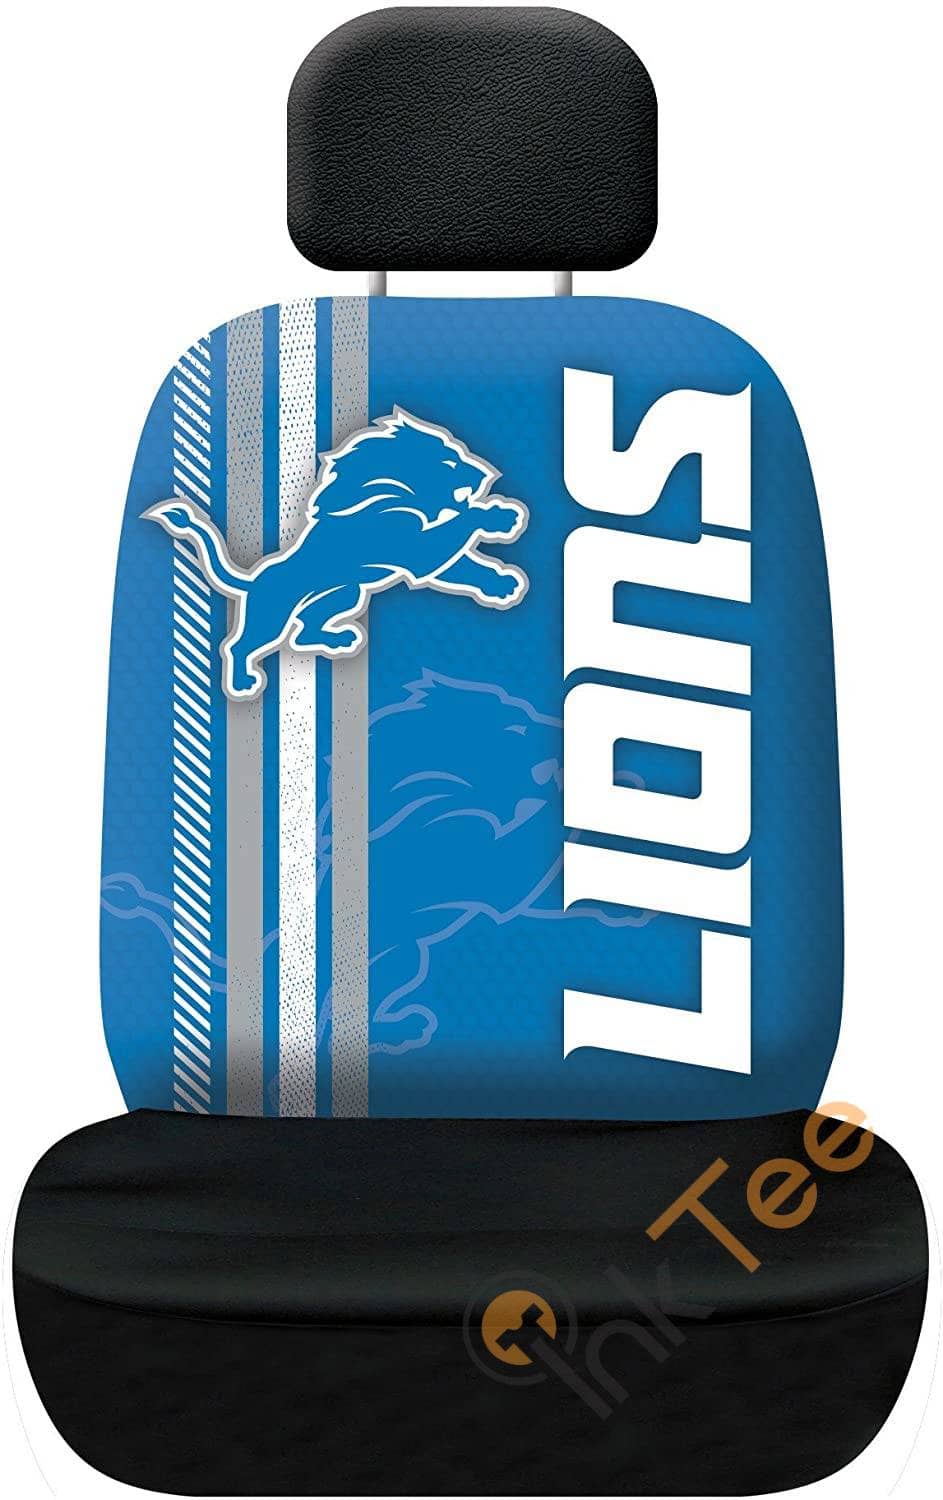 Nfl Detroit Lions Team Seat Cover